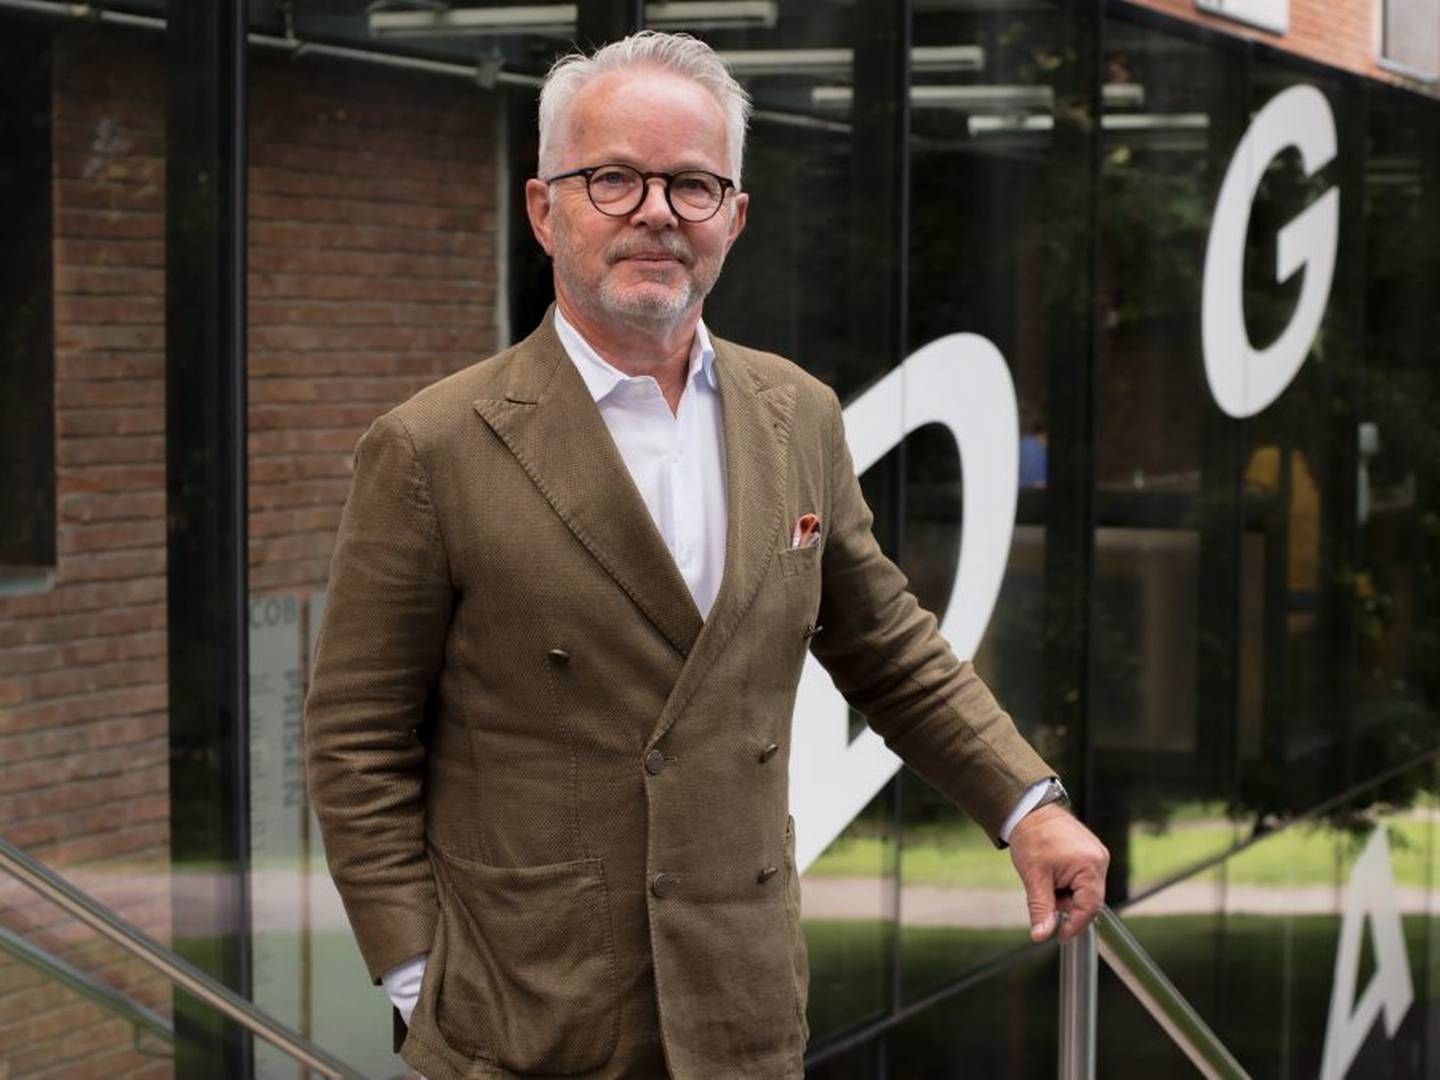 NY LEDER: Gunnar Bøyum er styreleder i Schage Eiendom, og har siden februar vært på leting etter selskapets nye sjef. Valget falt på Matilda Vinje. | Foto: Aspelin Ramm